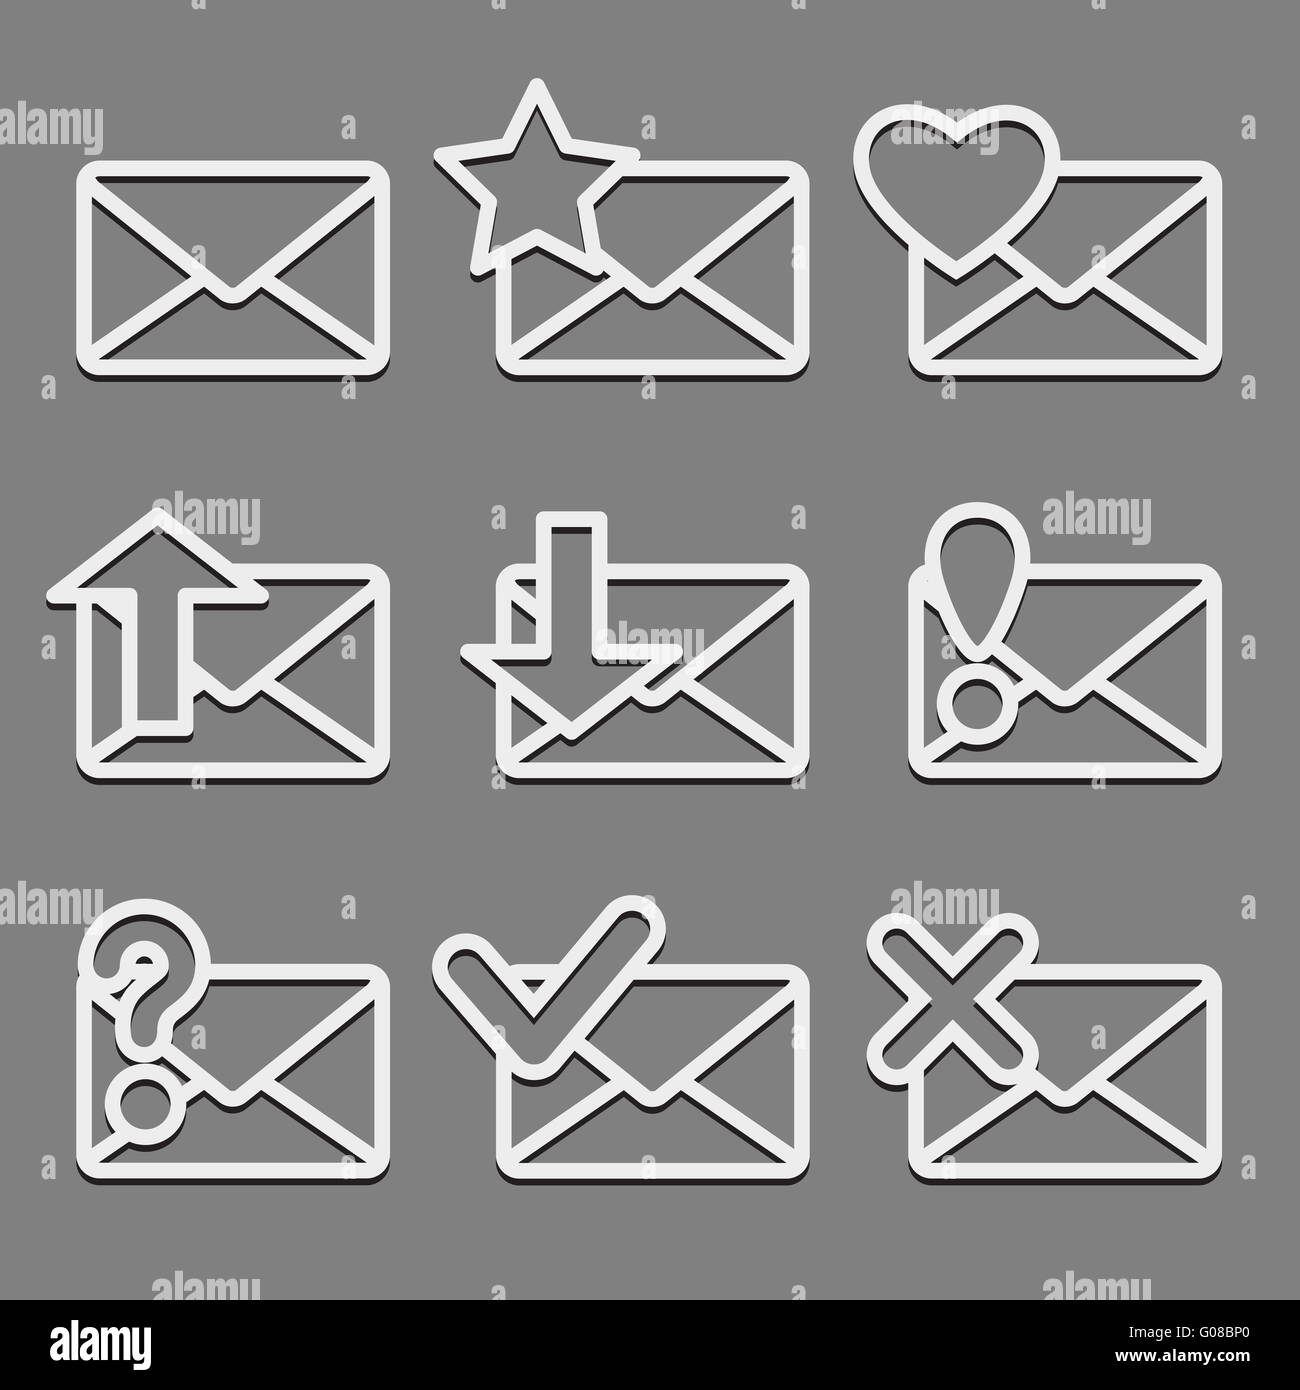 Mail envelope web icons set on dark background. Stock Photo